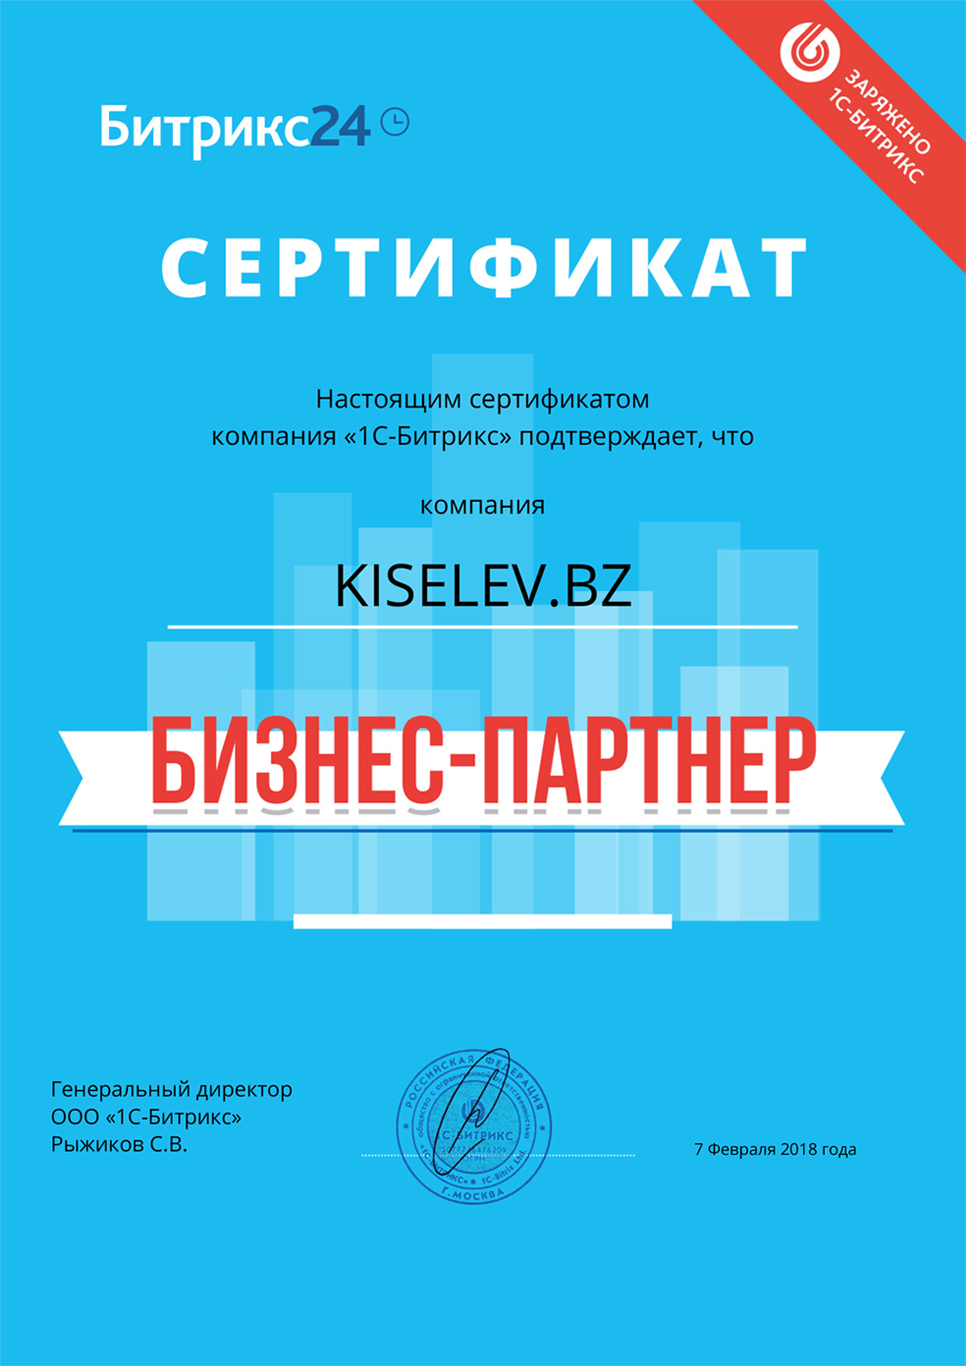 Сертификат партнёра по АМОСРМ в Курчатове